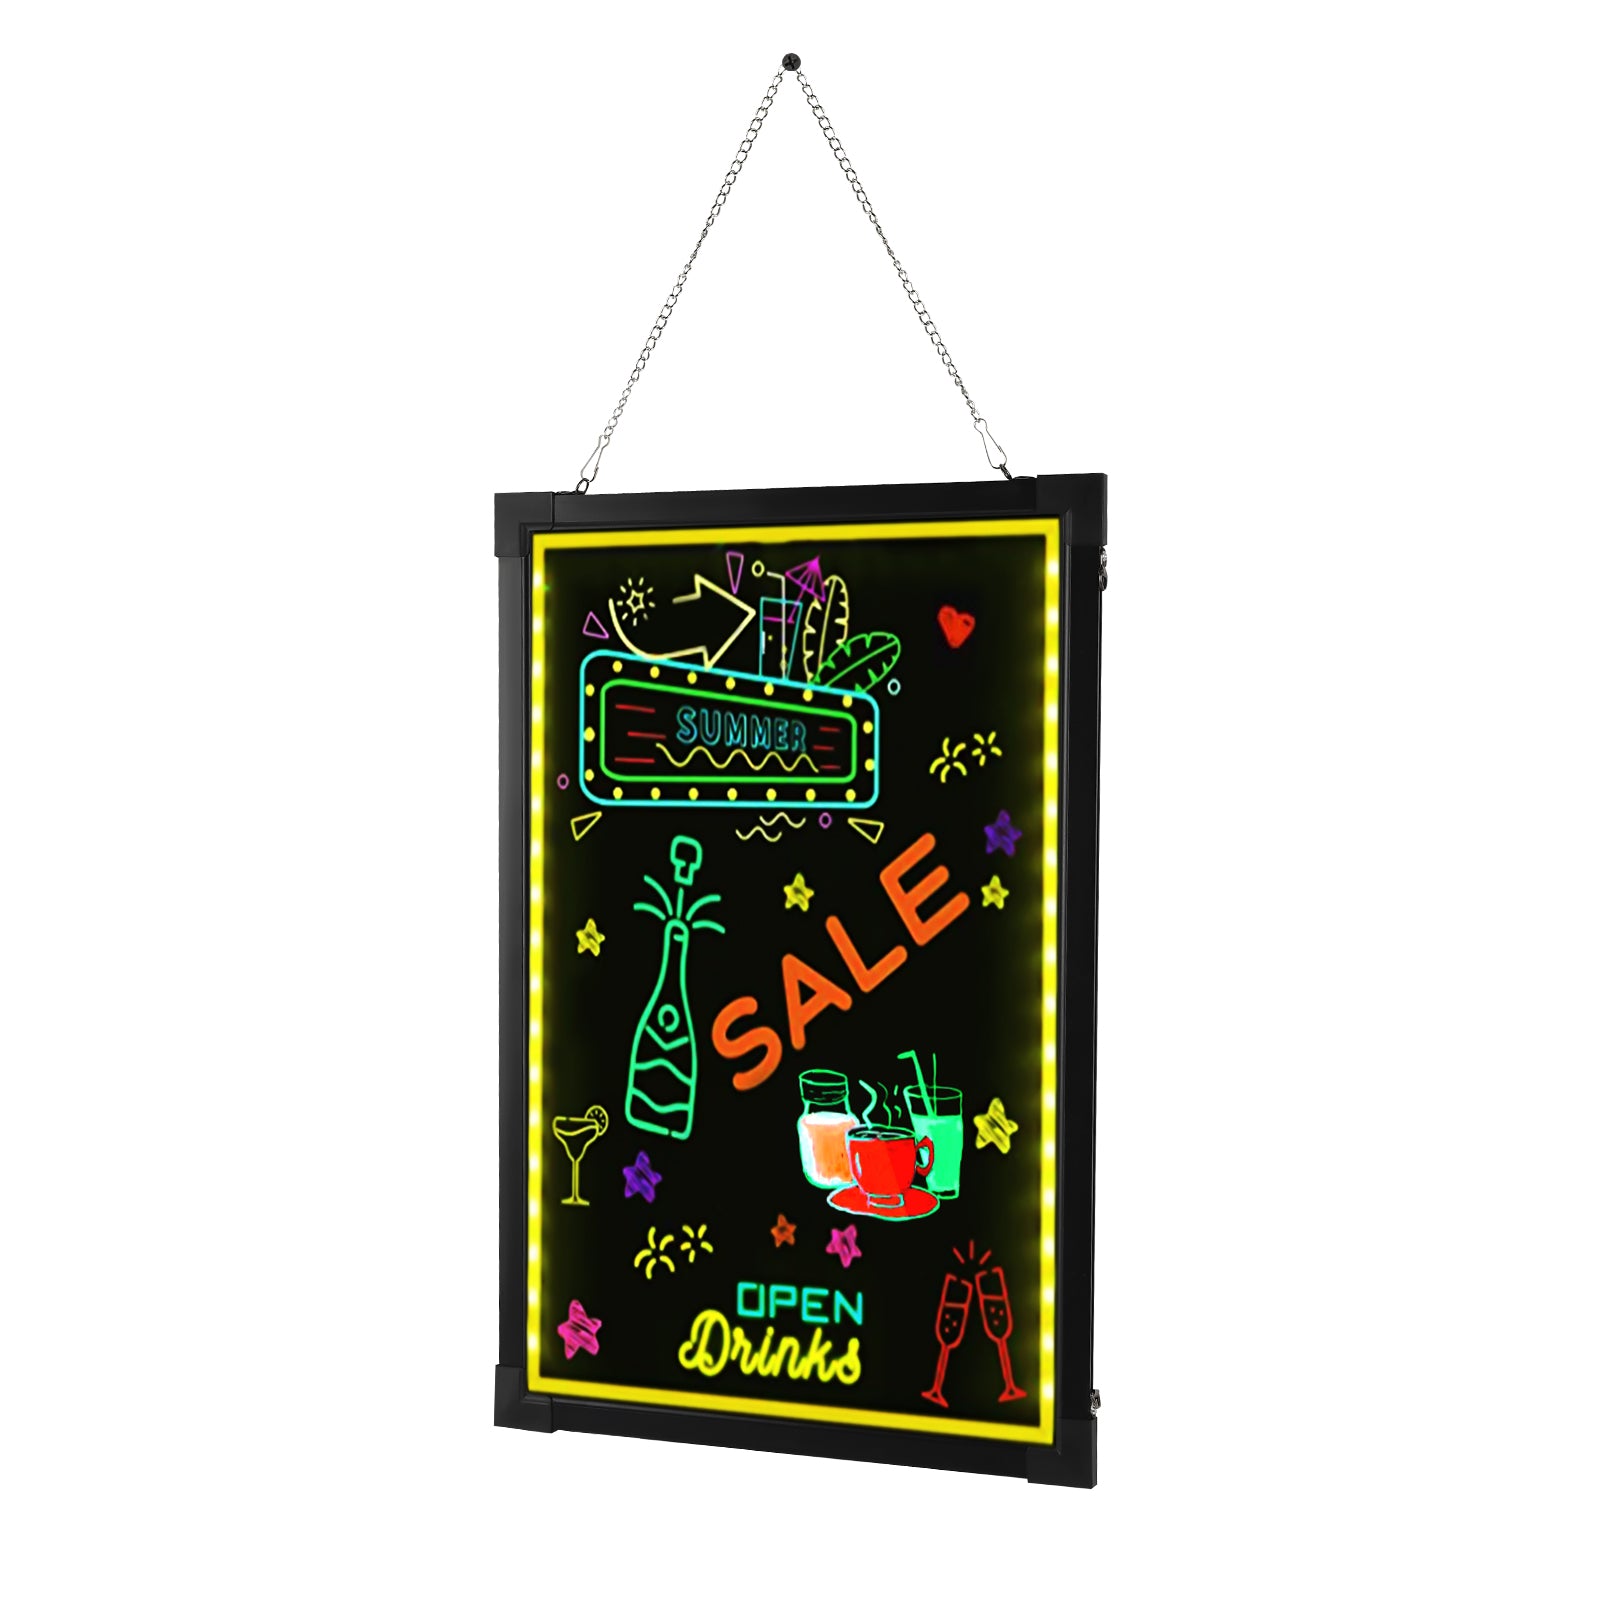 Lavagna luminosa a LED, con telecomando e 8 penne al neon,60 x 80 cm,per bar, ristorante, matrimonio